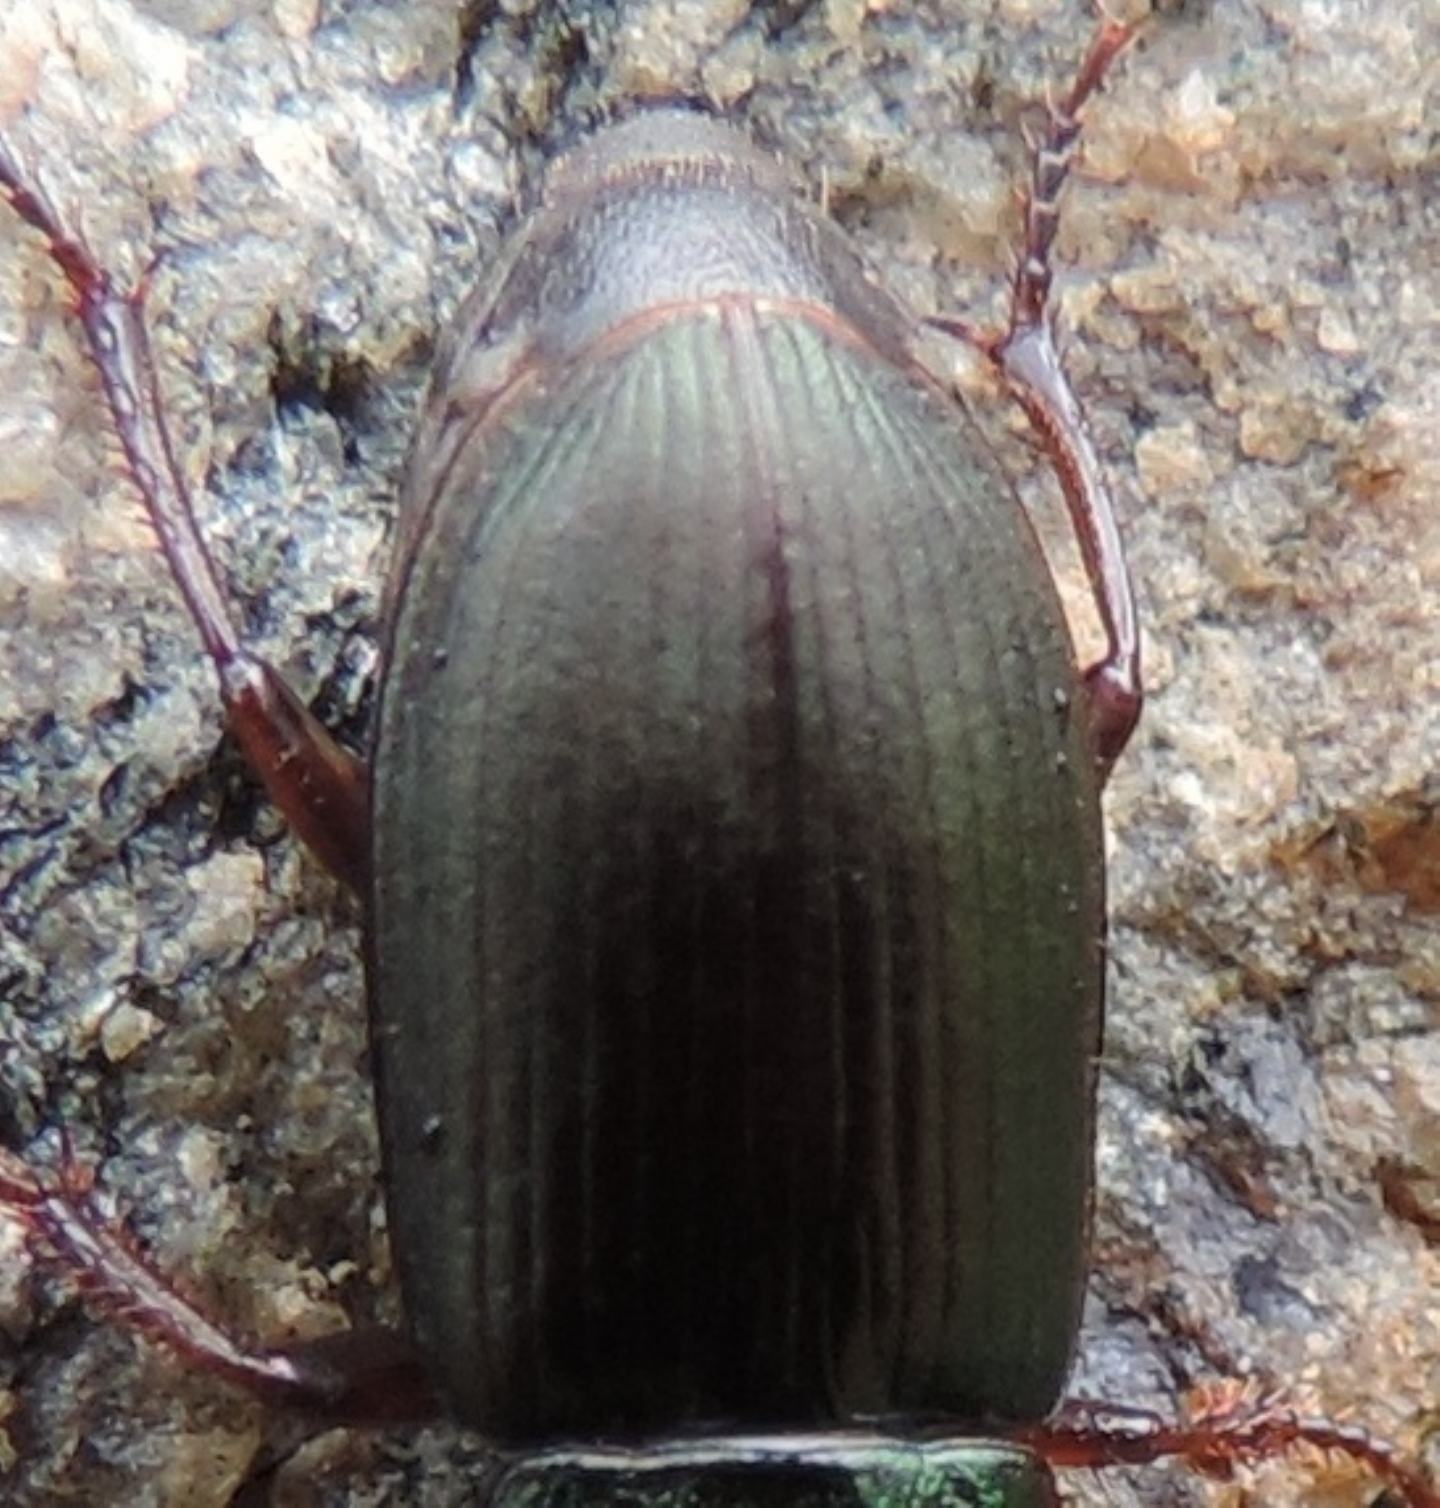 Carabidae: Harpalus affinis,  femmina